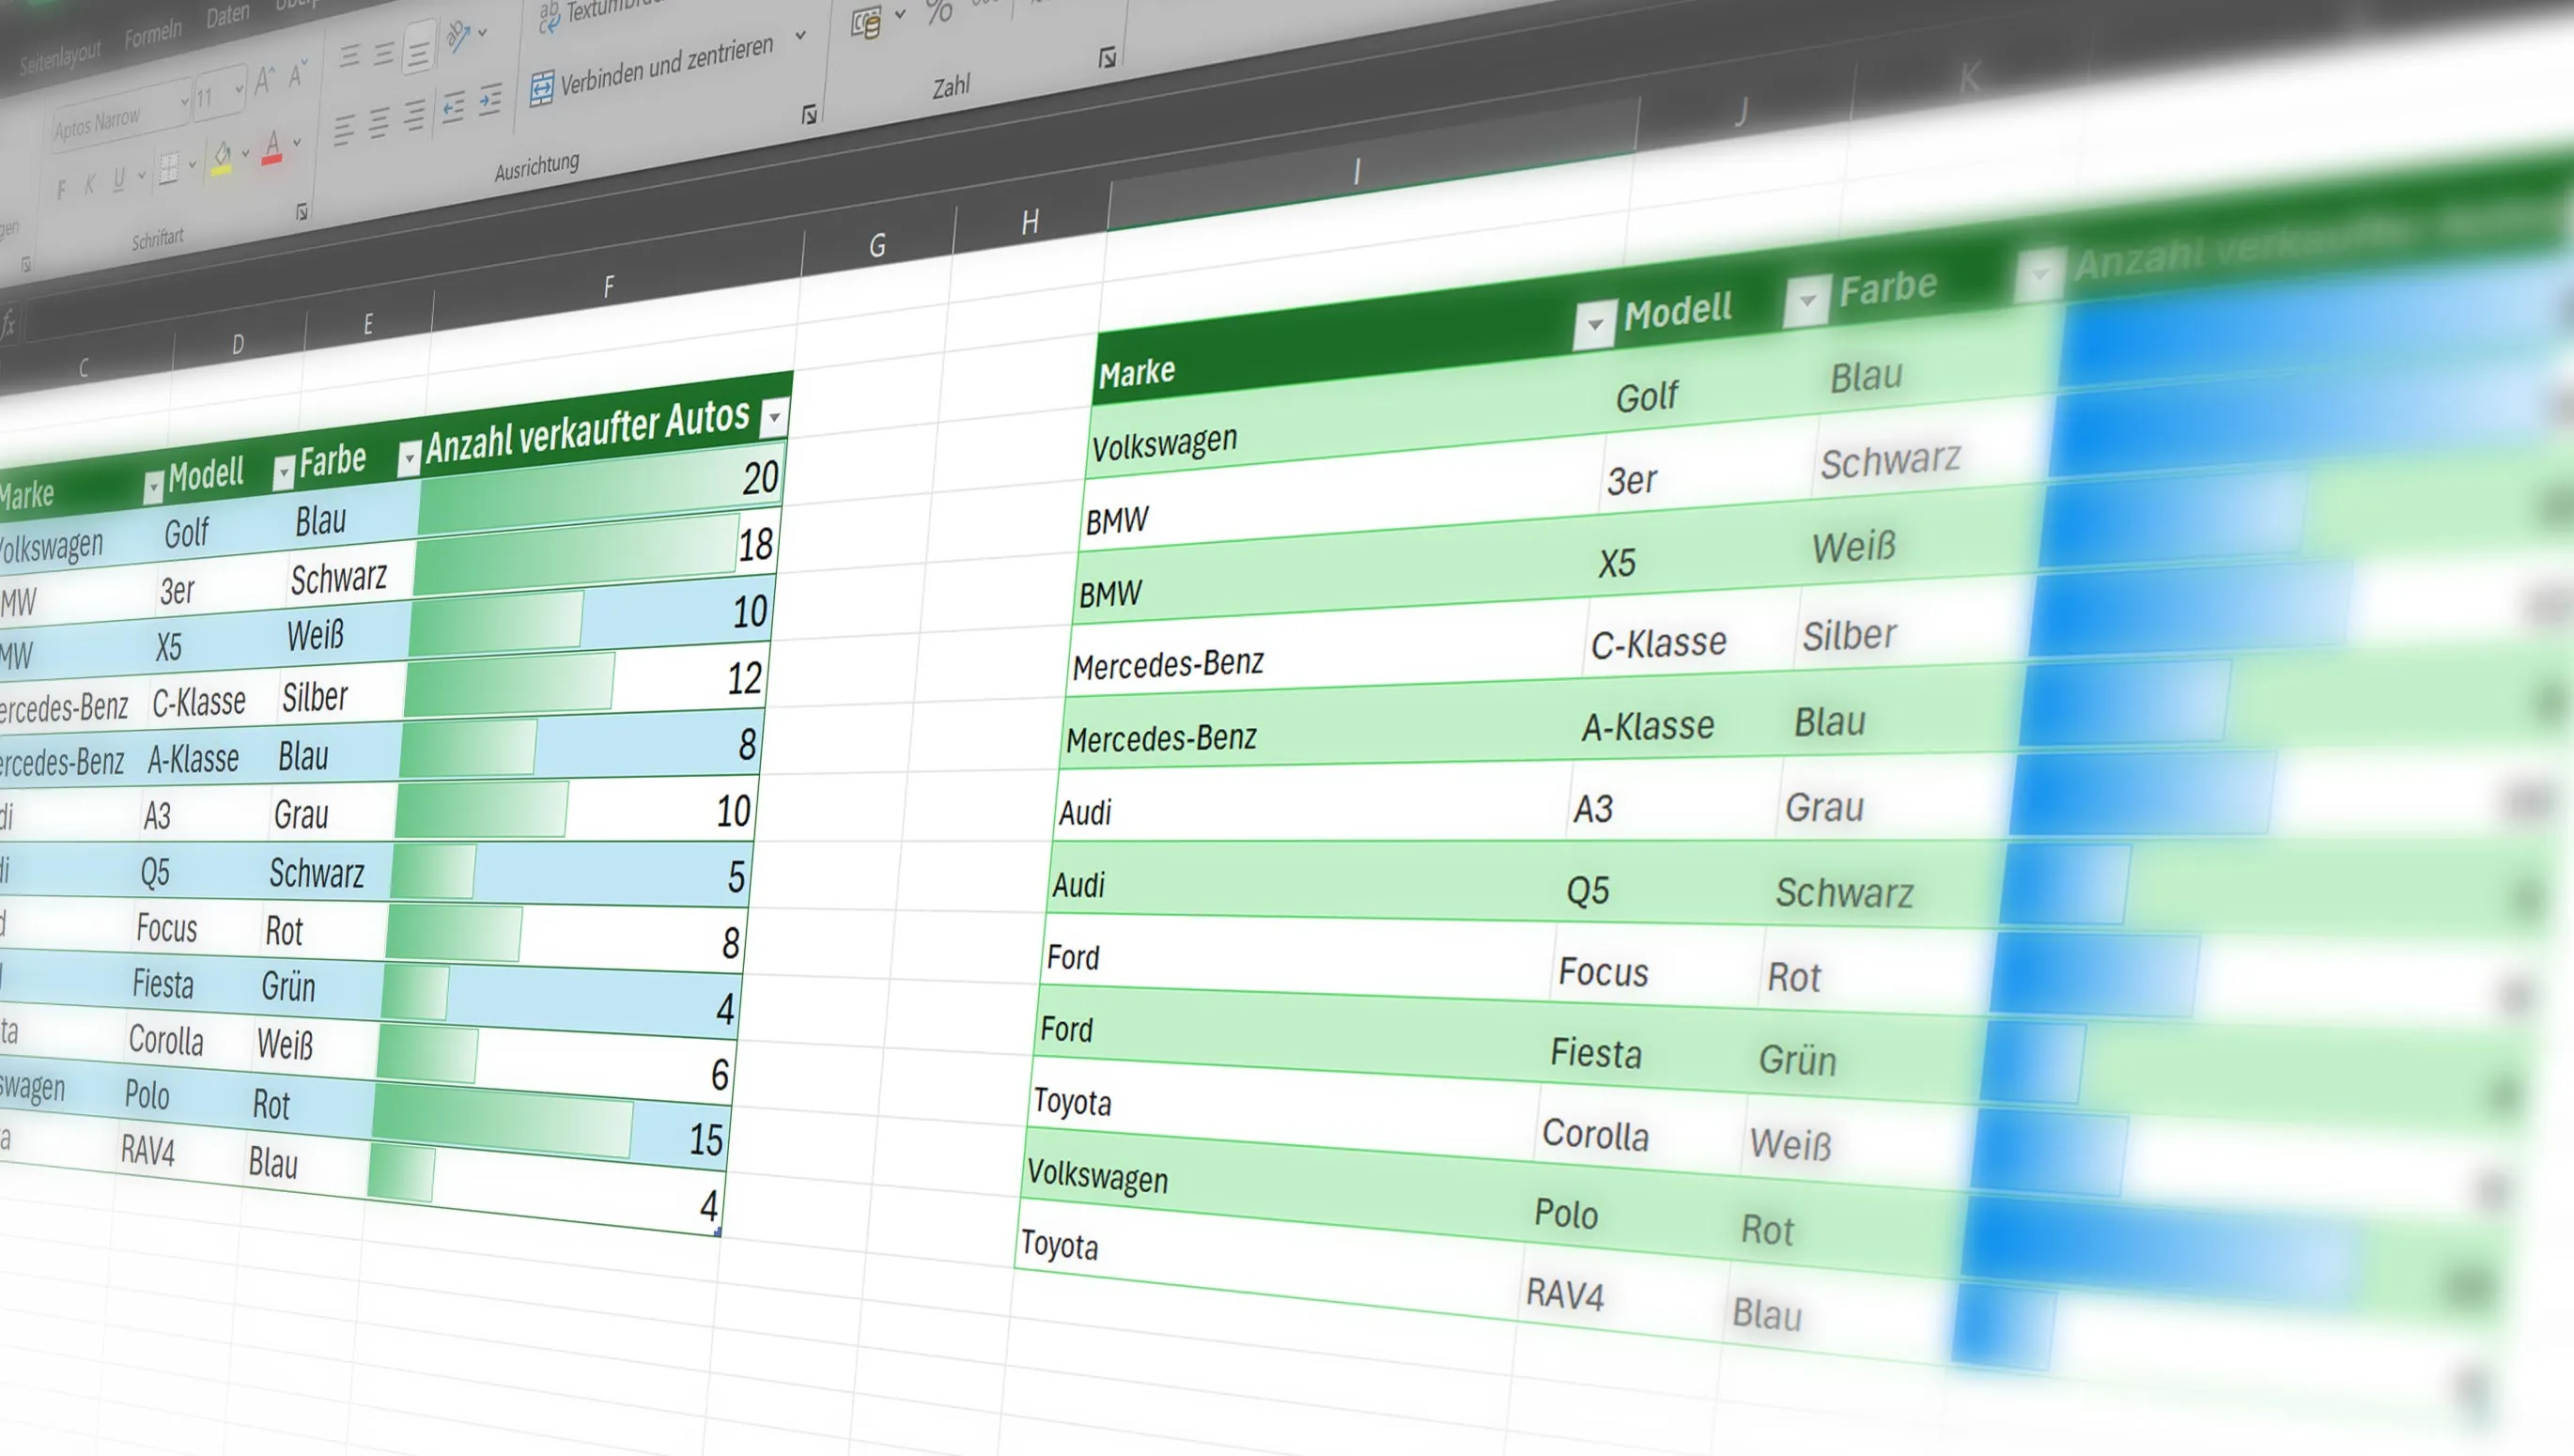 In Excel Spalten und Zeilen verschieben